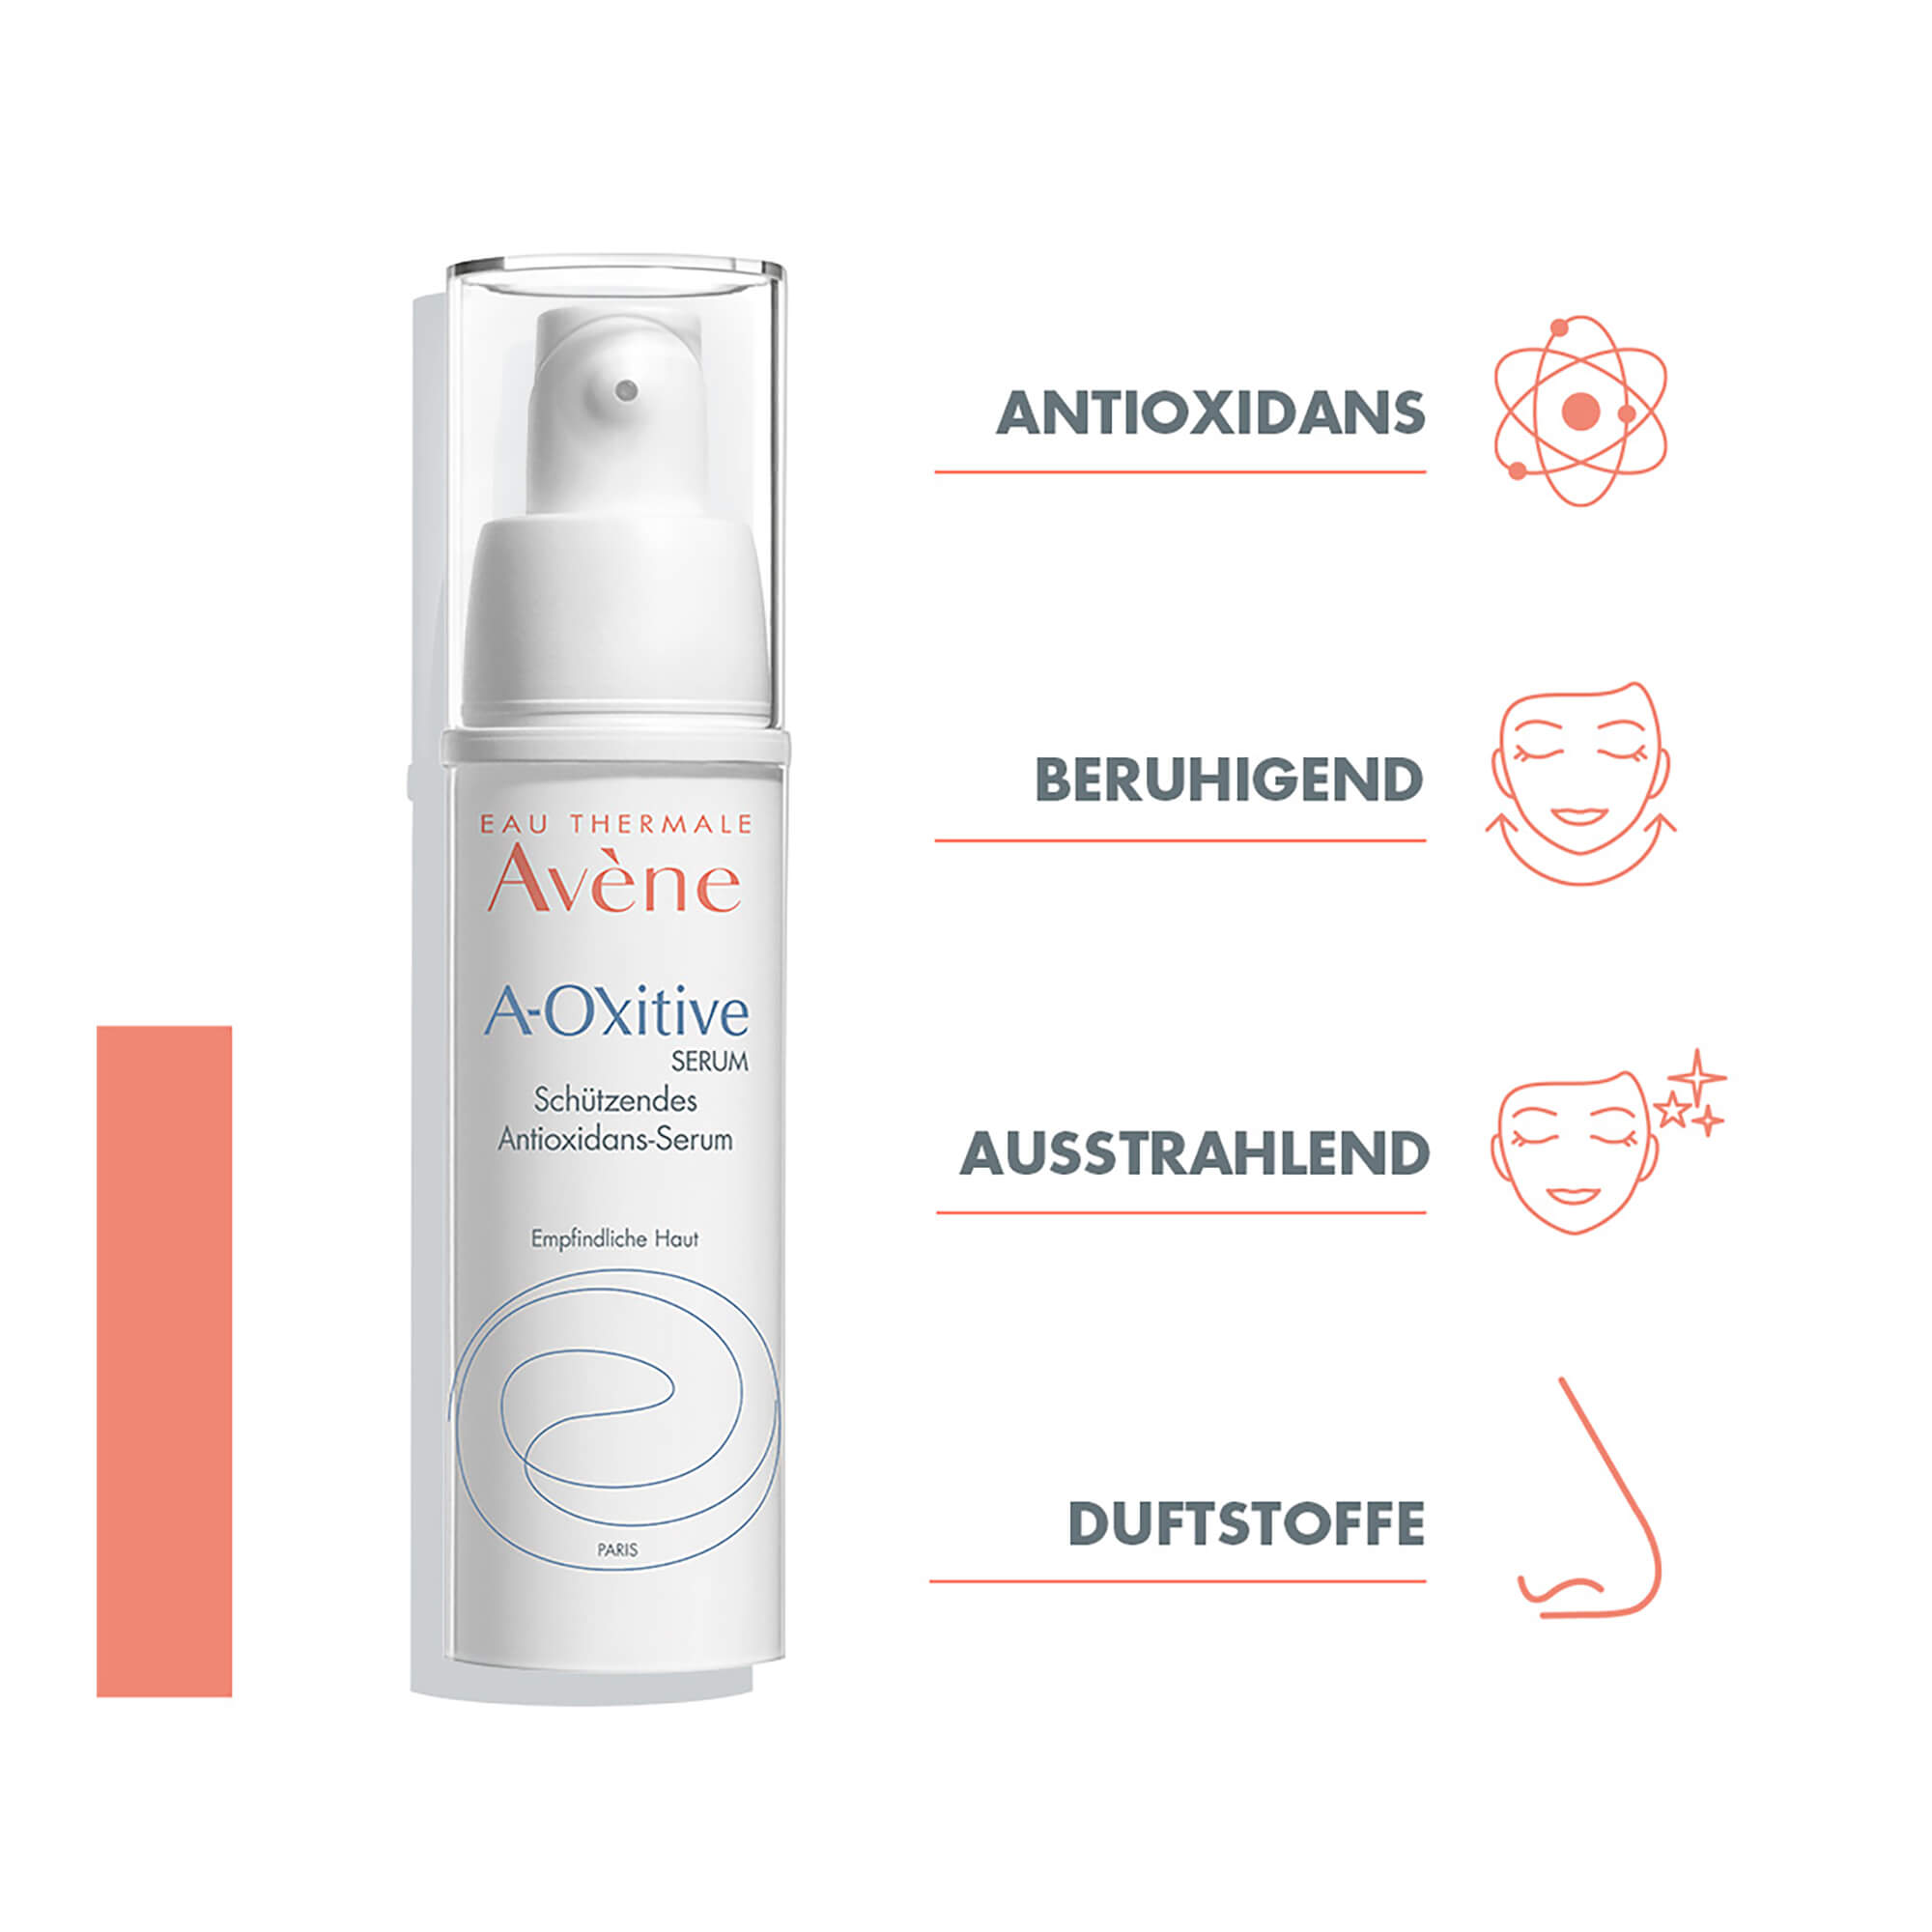 Avene A-OXitive SERUM Schützendes Antioxidans-Serum Vorteile